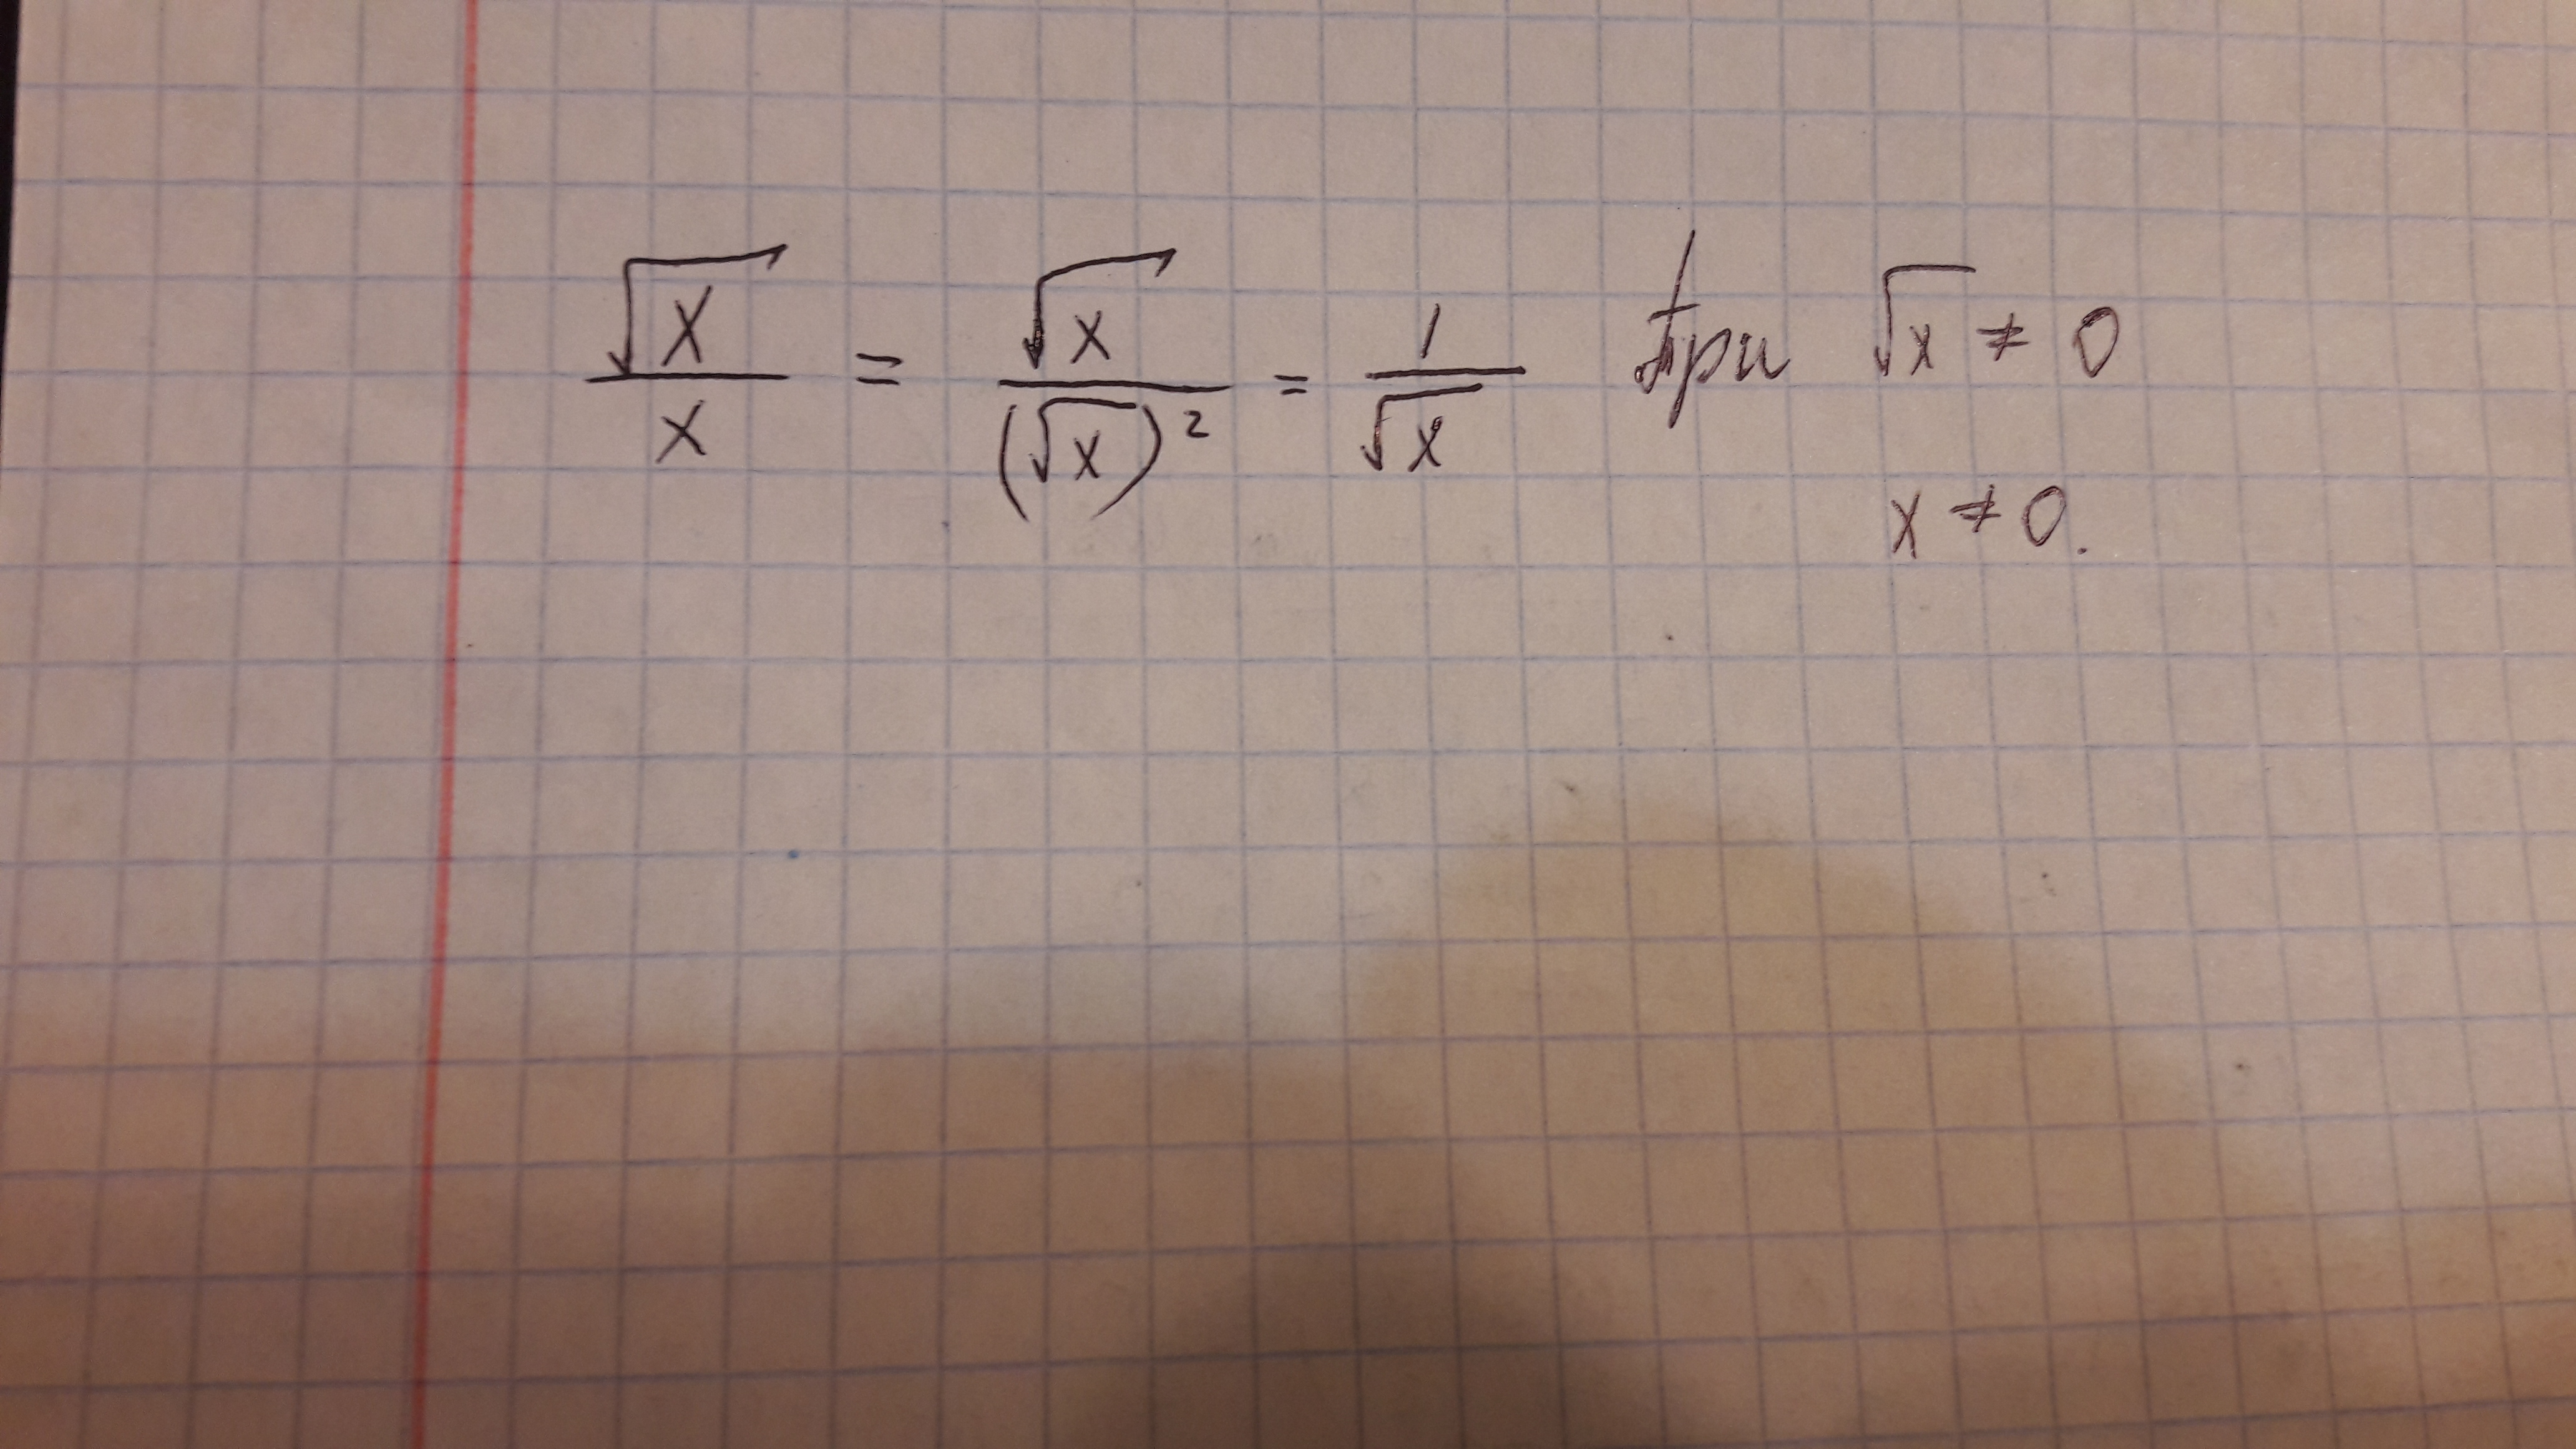 7 корень 7 поделить. Икс делить на корень из Икс. Икс в квадрате равен. Корень из Икс равно -1. Корень из.